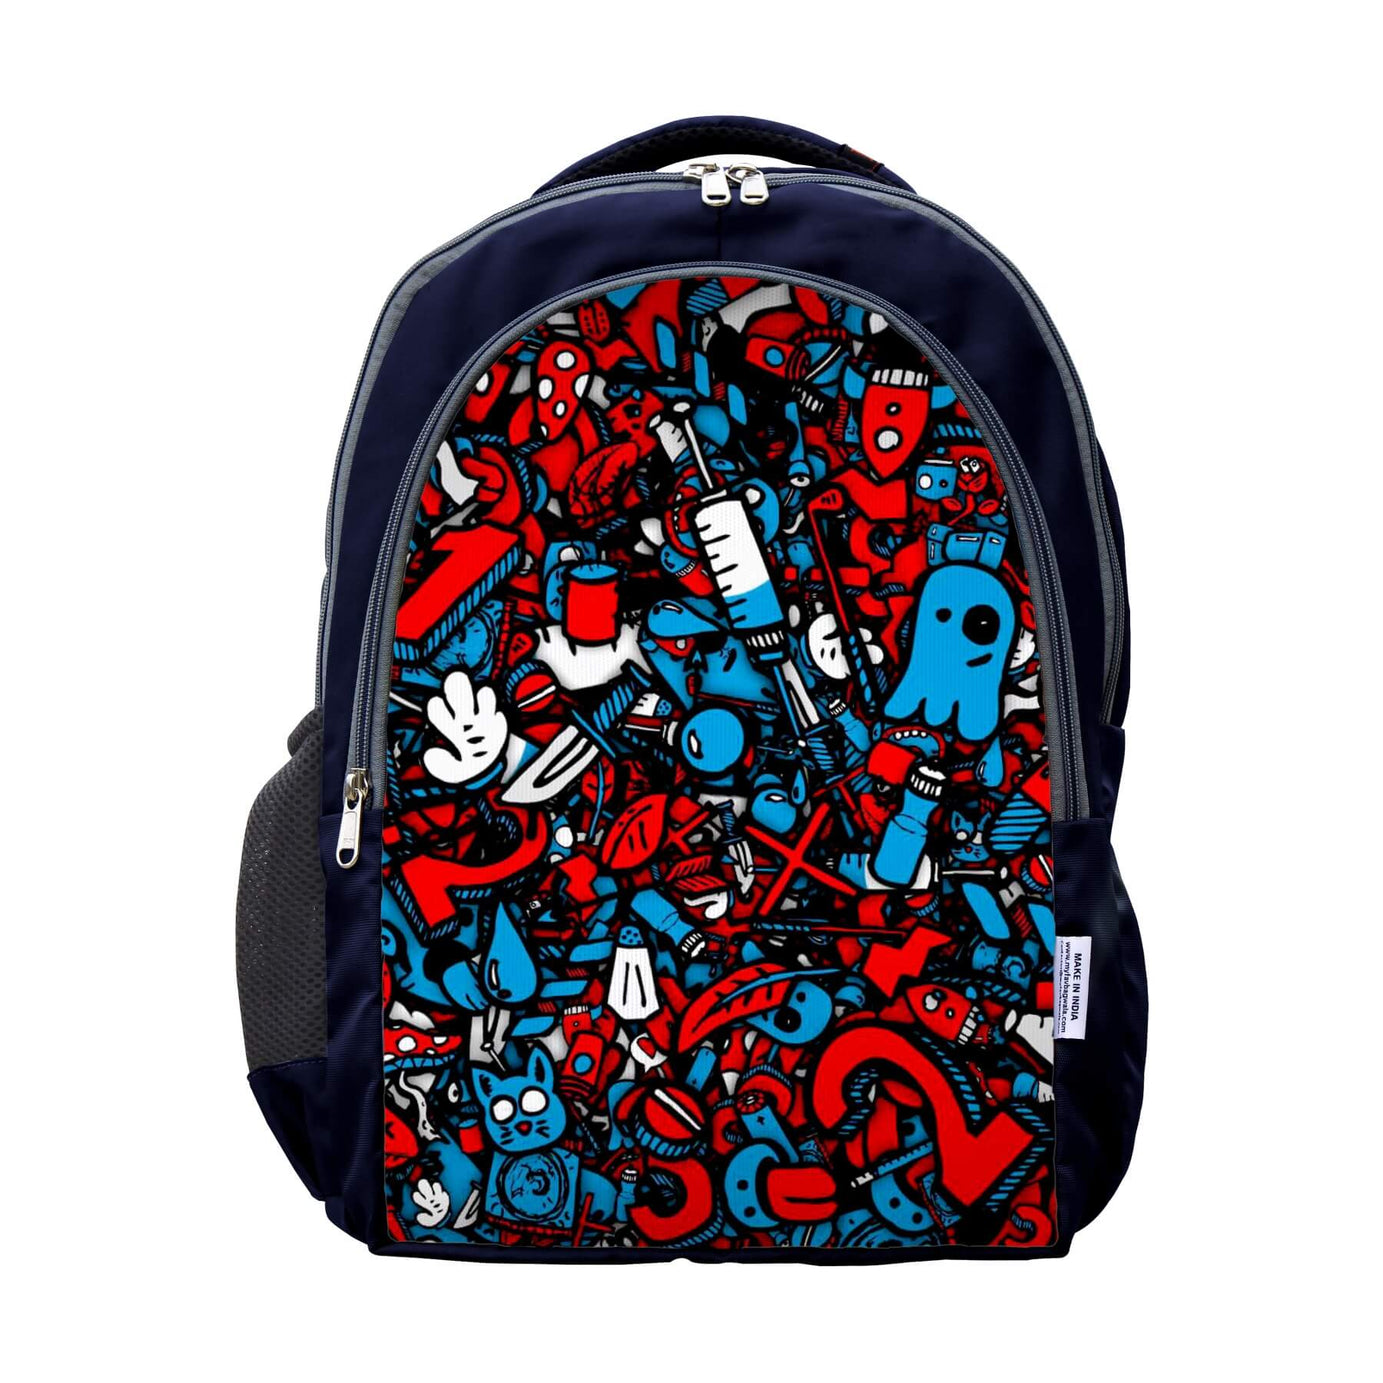 My Fav Multi Printed Laptop Backpack For Men Women / School Bag for Boys Girls